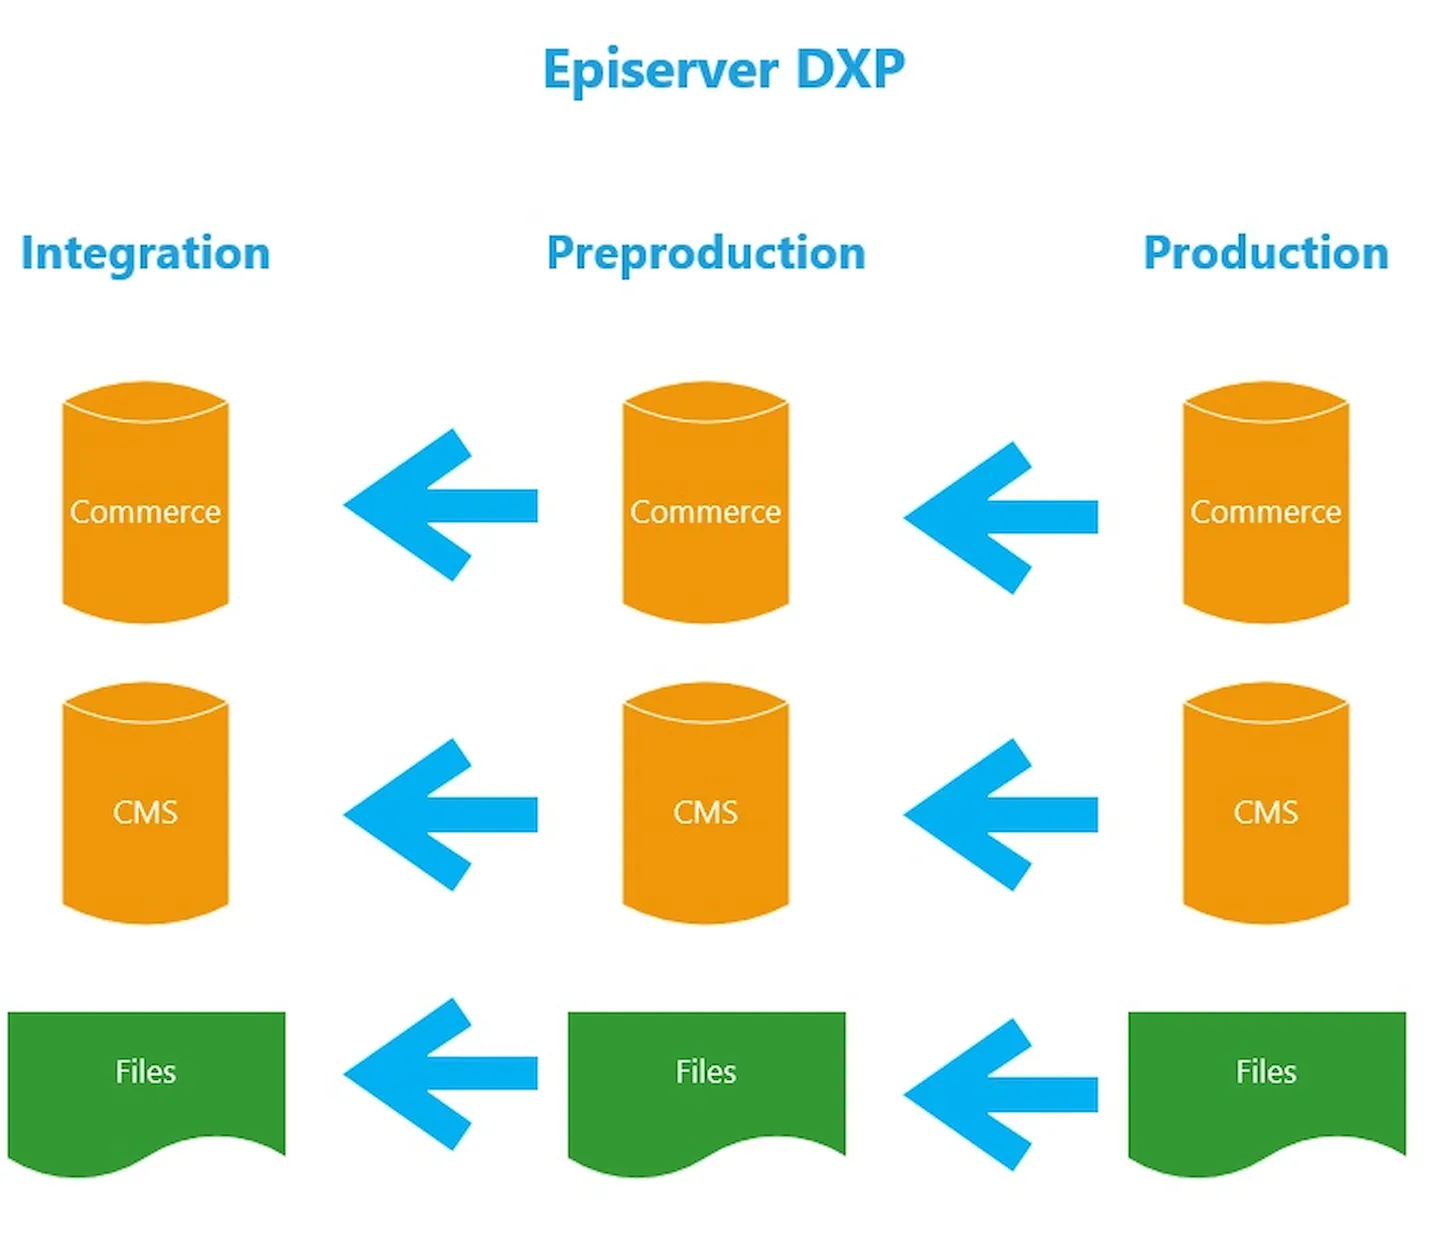 DXP content harmonization